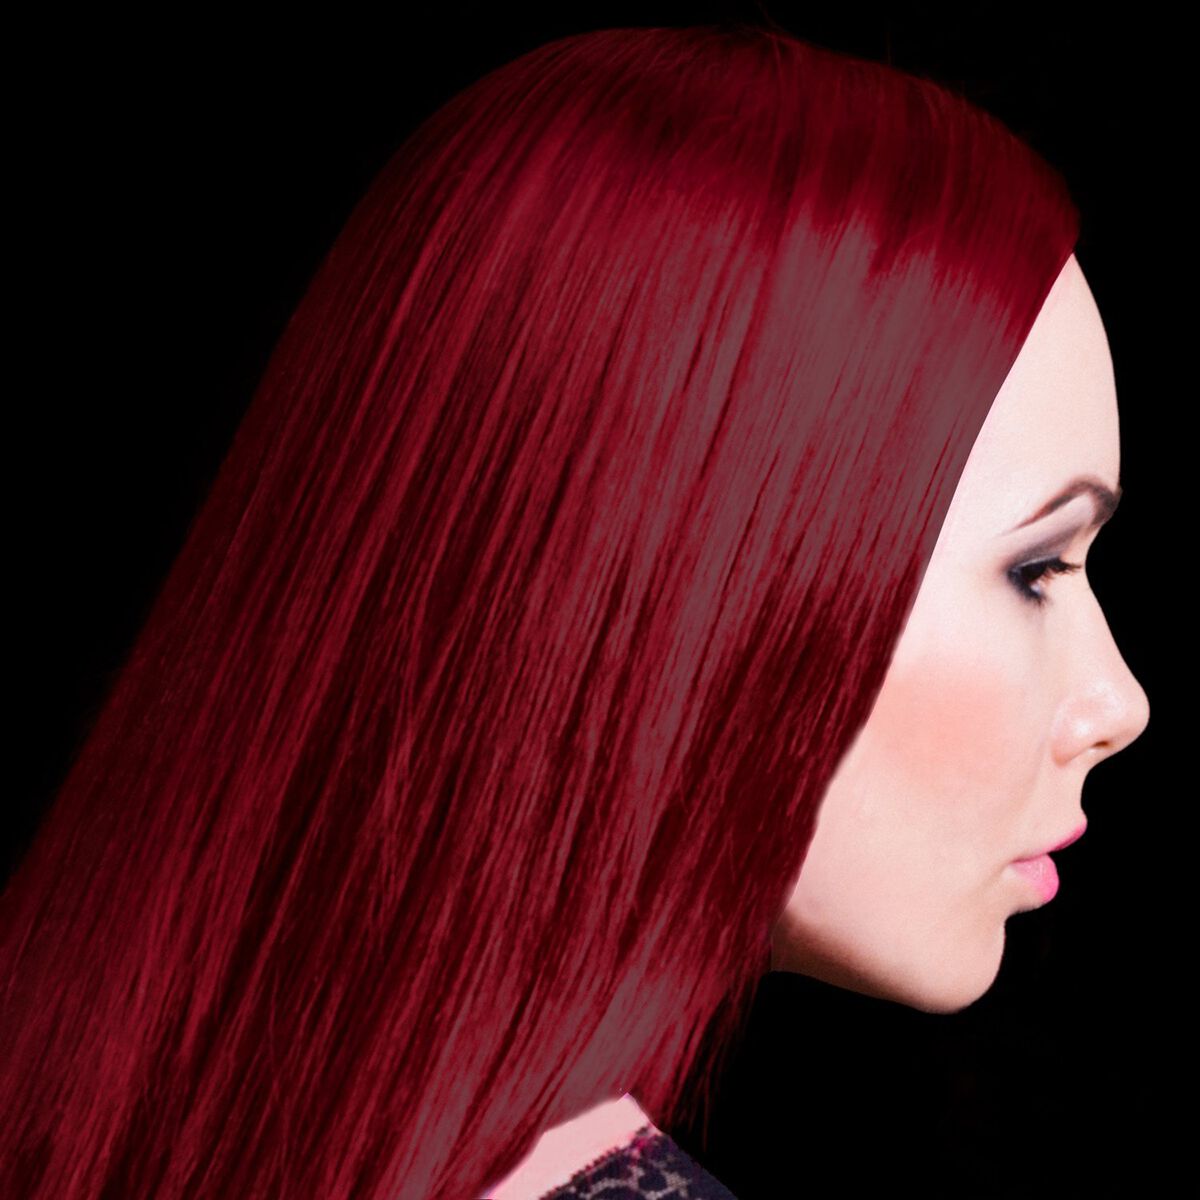 Panic Vampire Red Hair Dye Large